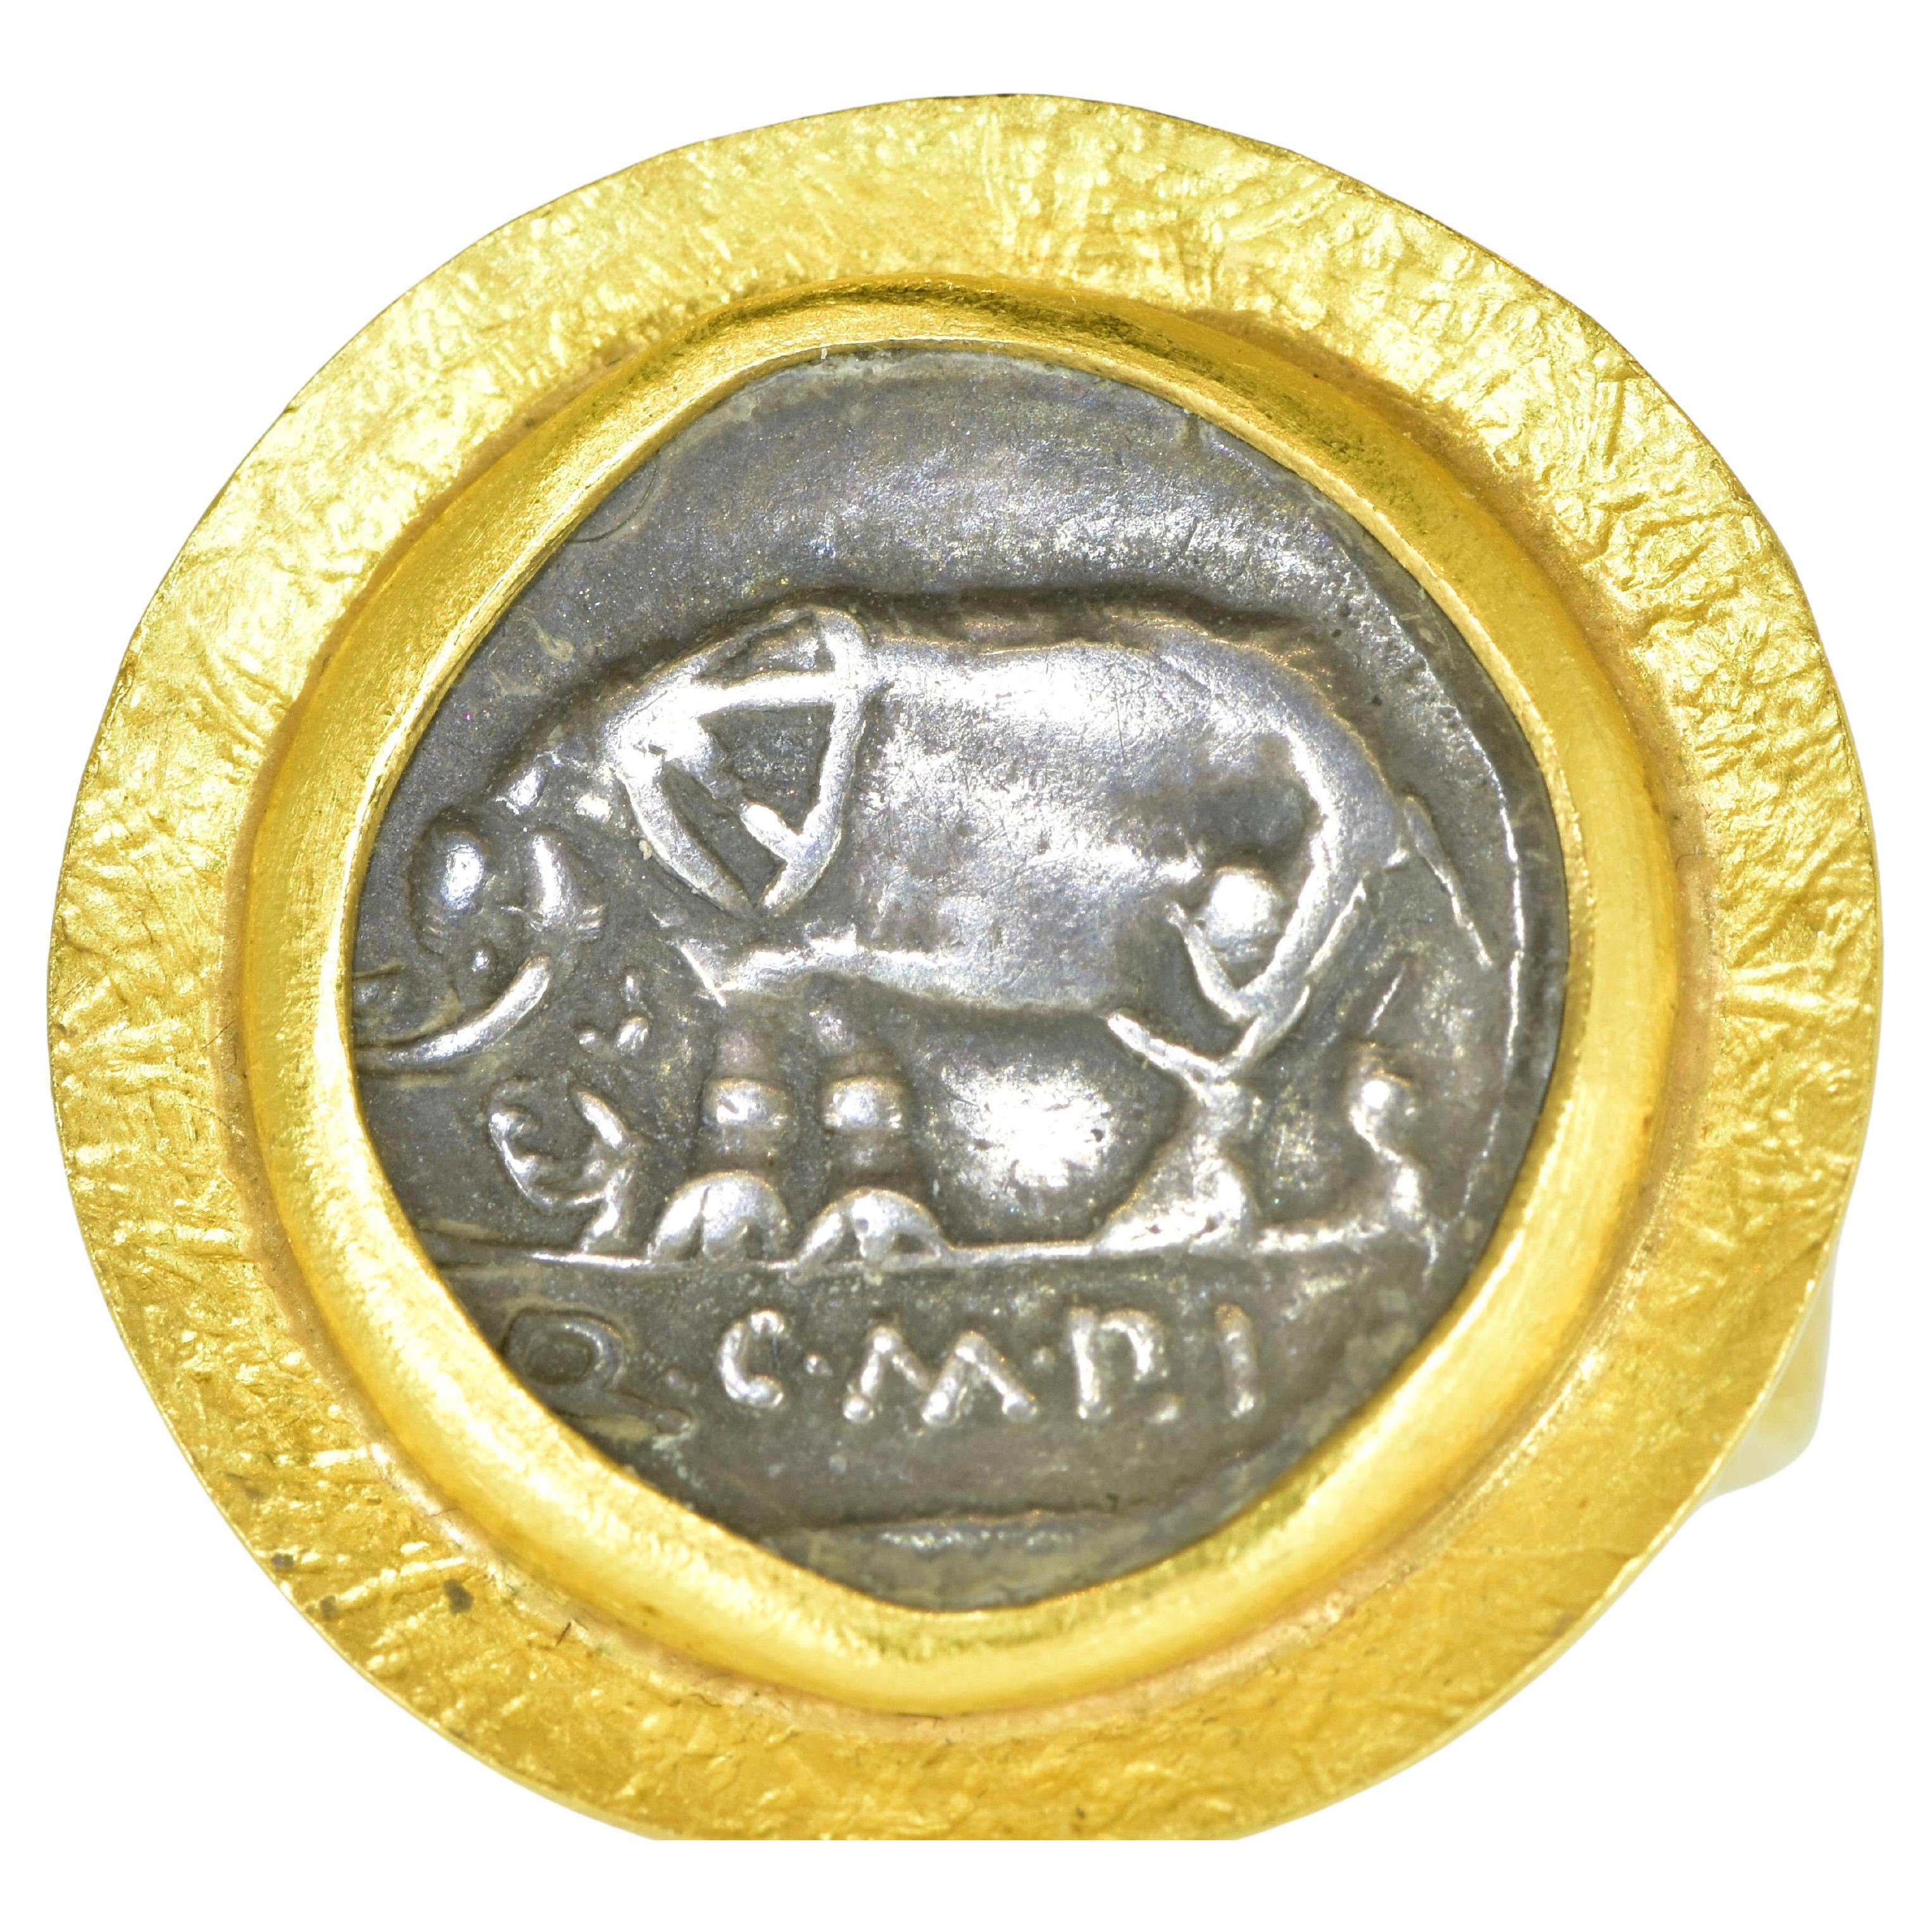 Ancient Roman, 81 B.C, Coin  22K gold Ring centering the Authentic Fine Denarius